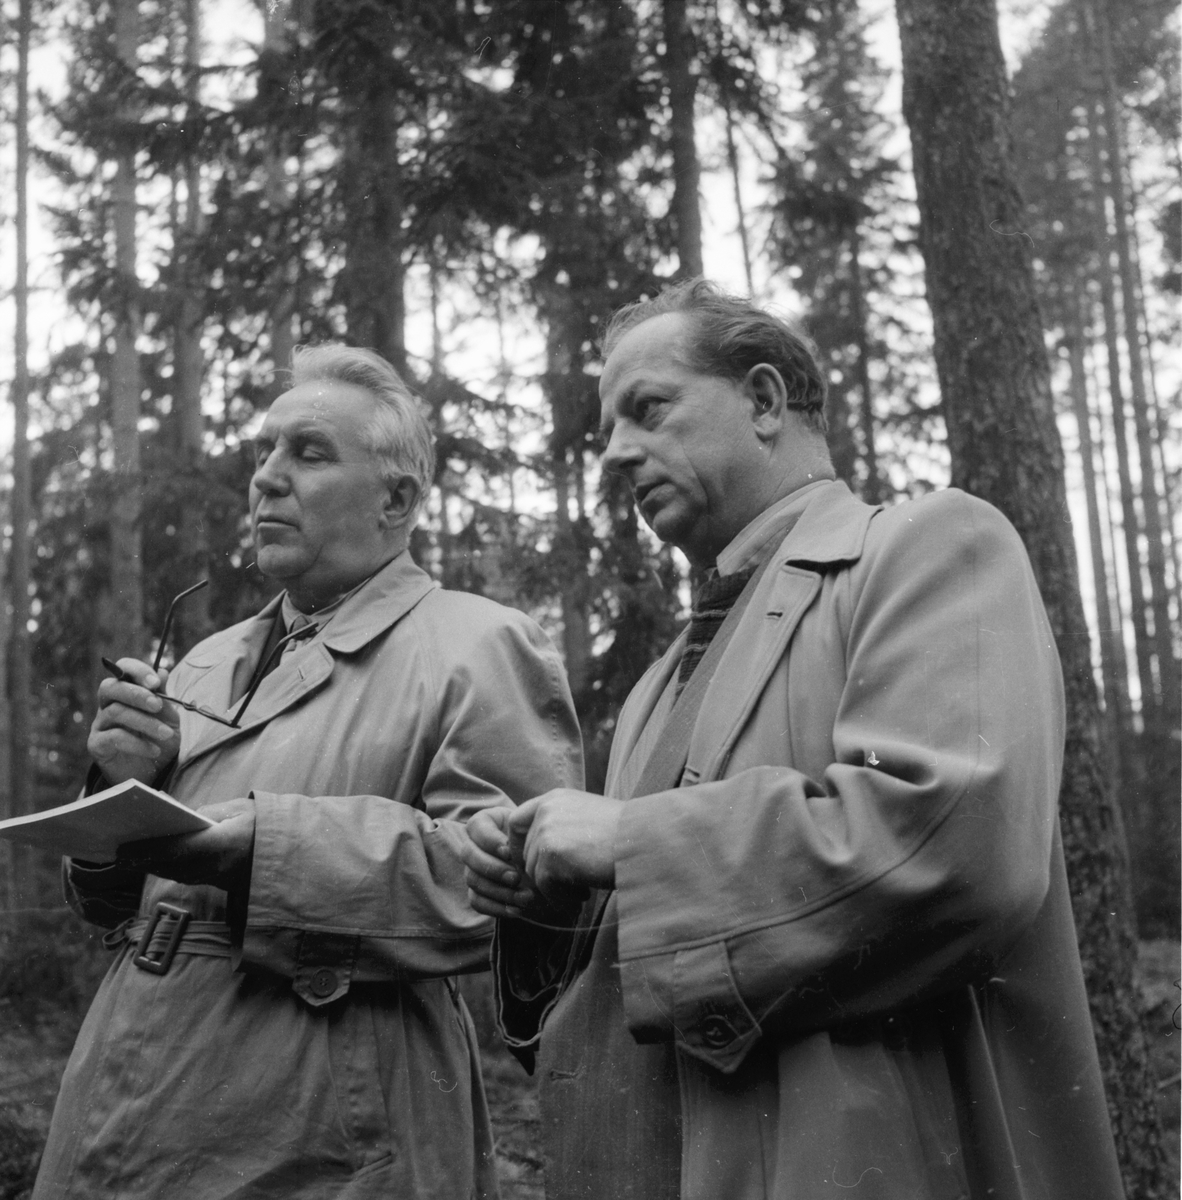 Ryska skogsmän på besök.
7/10 1958